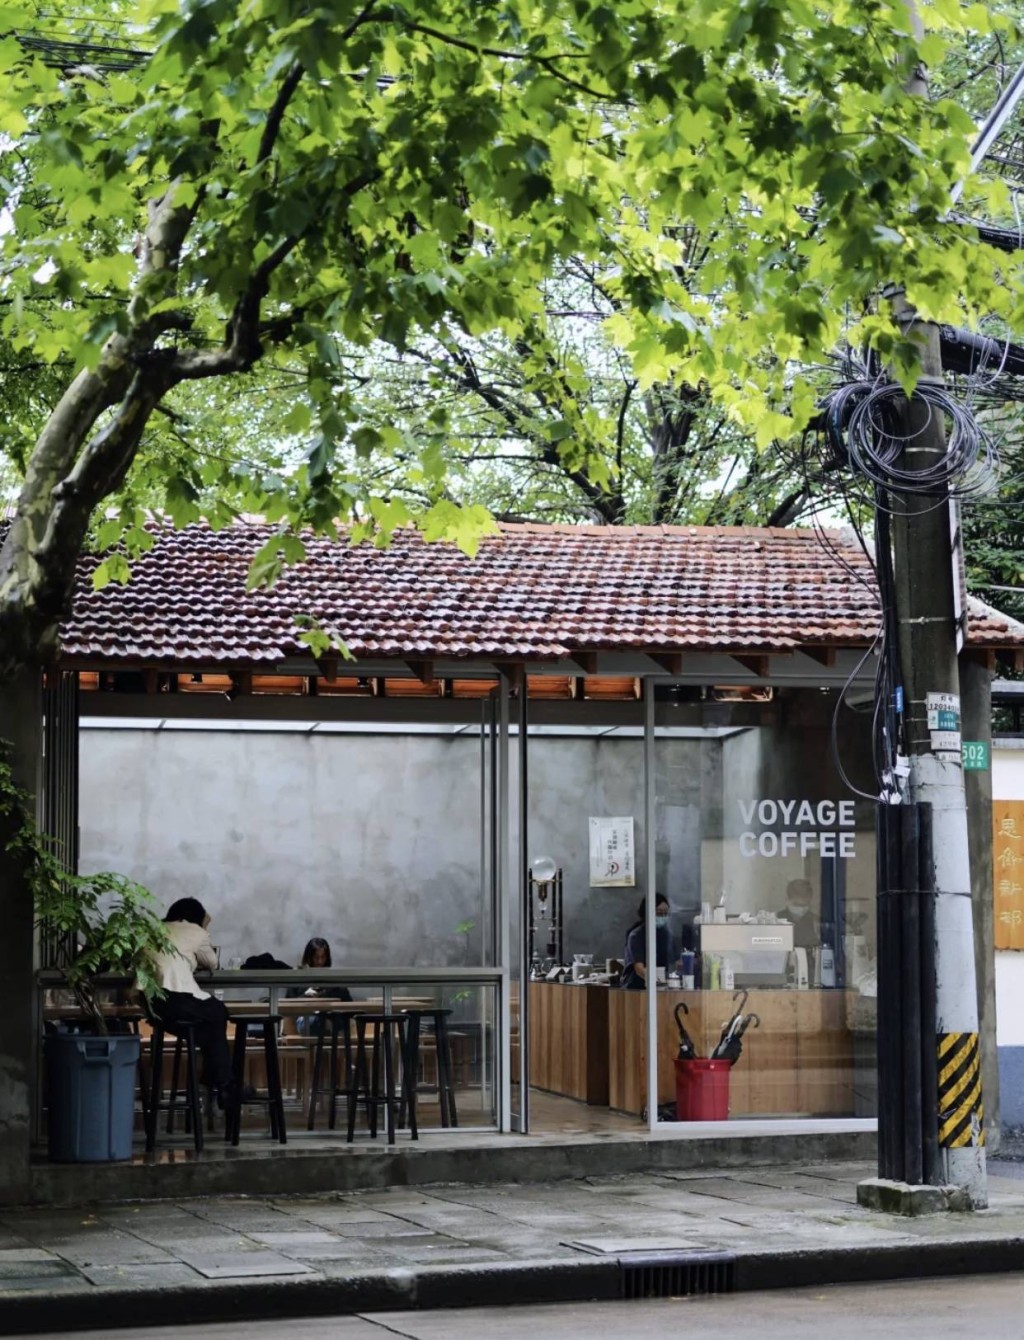 上海咖啡店9553间成全球最多。